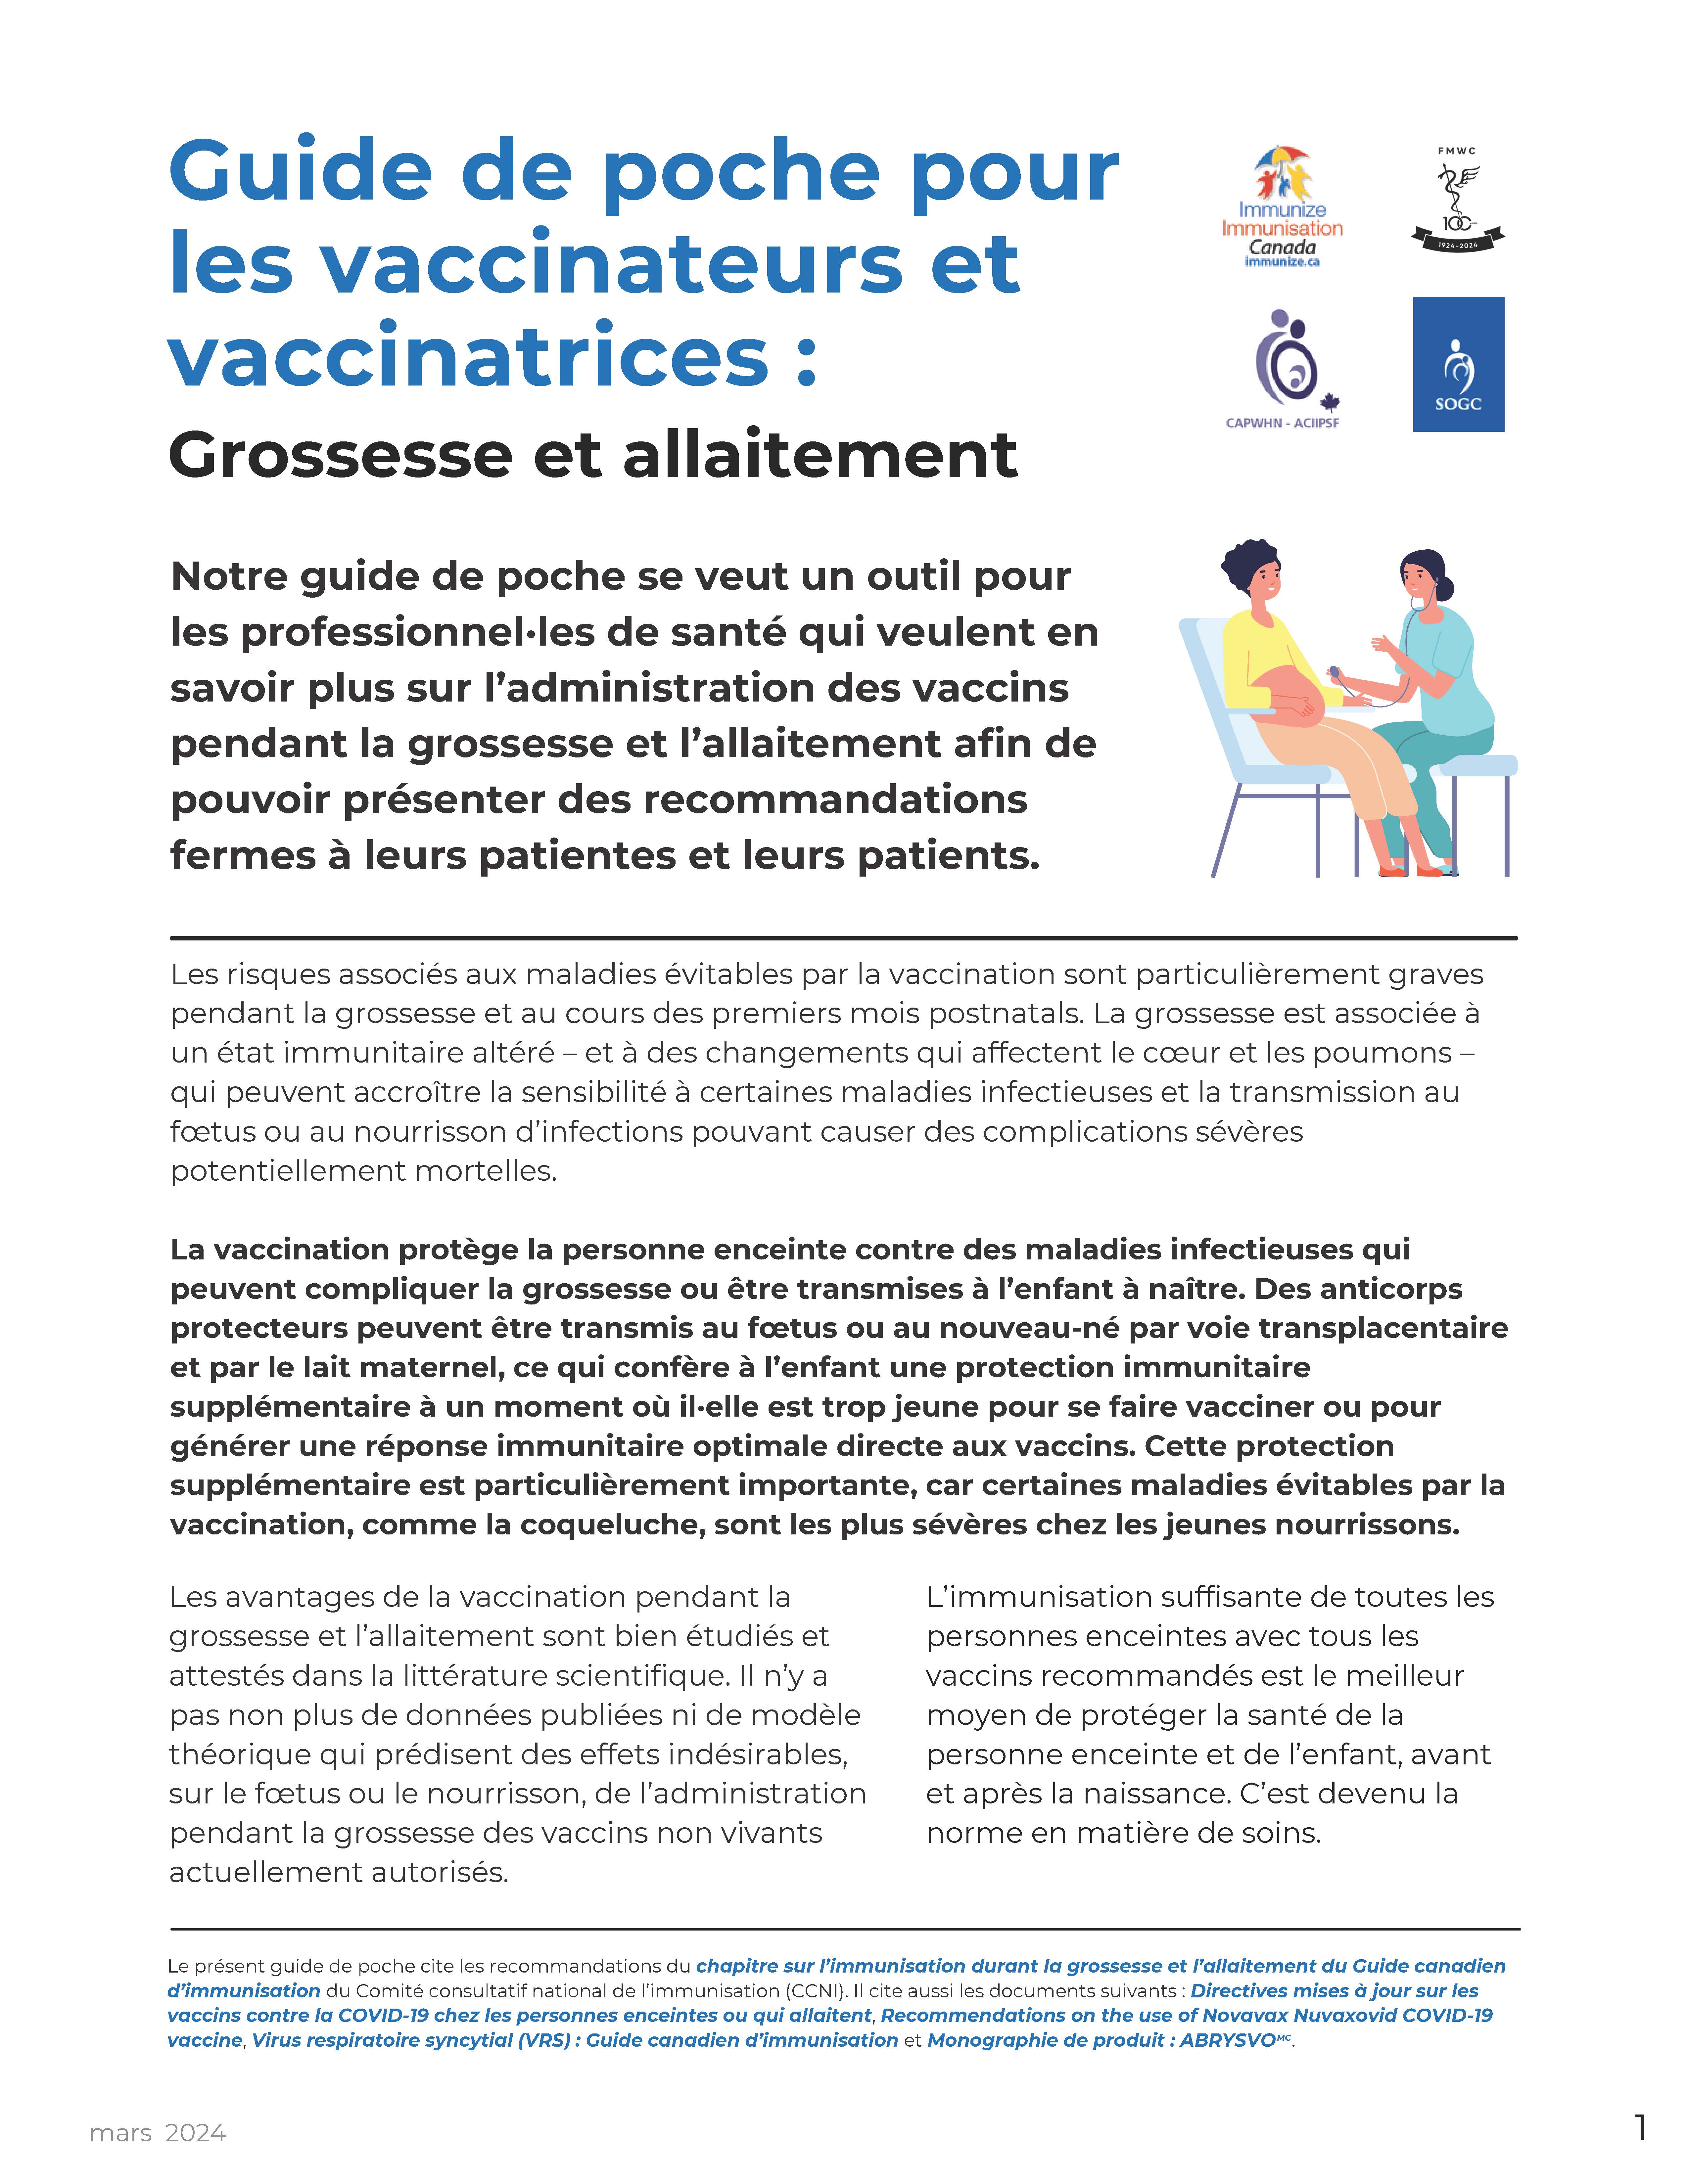 Guide de poche pour les vaccinateurs et vaccinatrices : Grossesse et allaitement